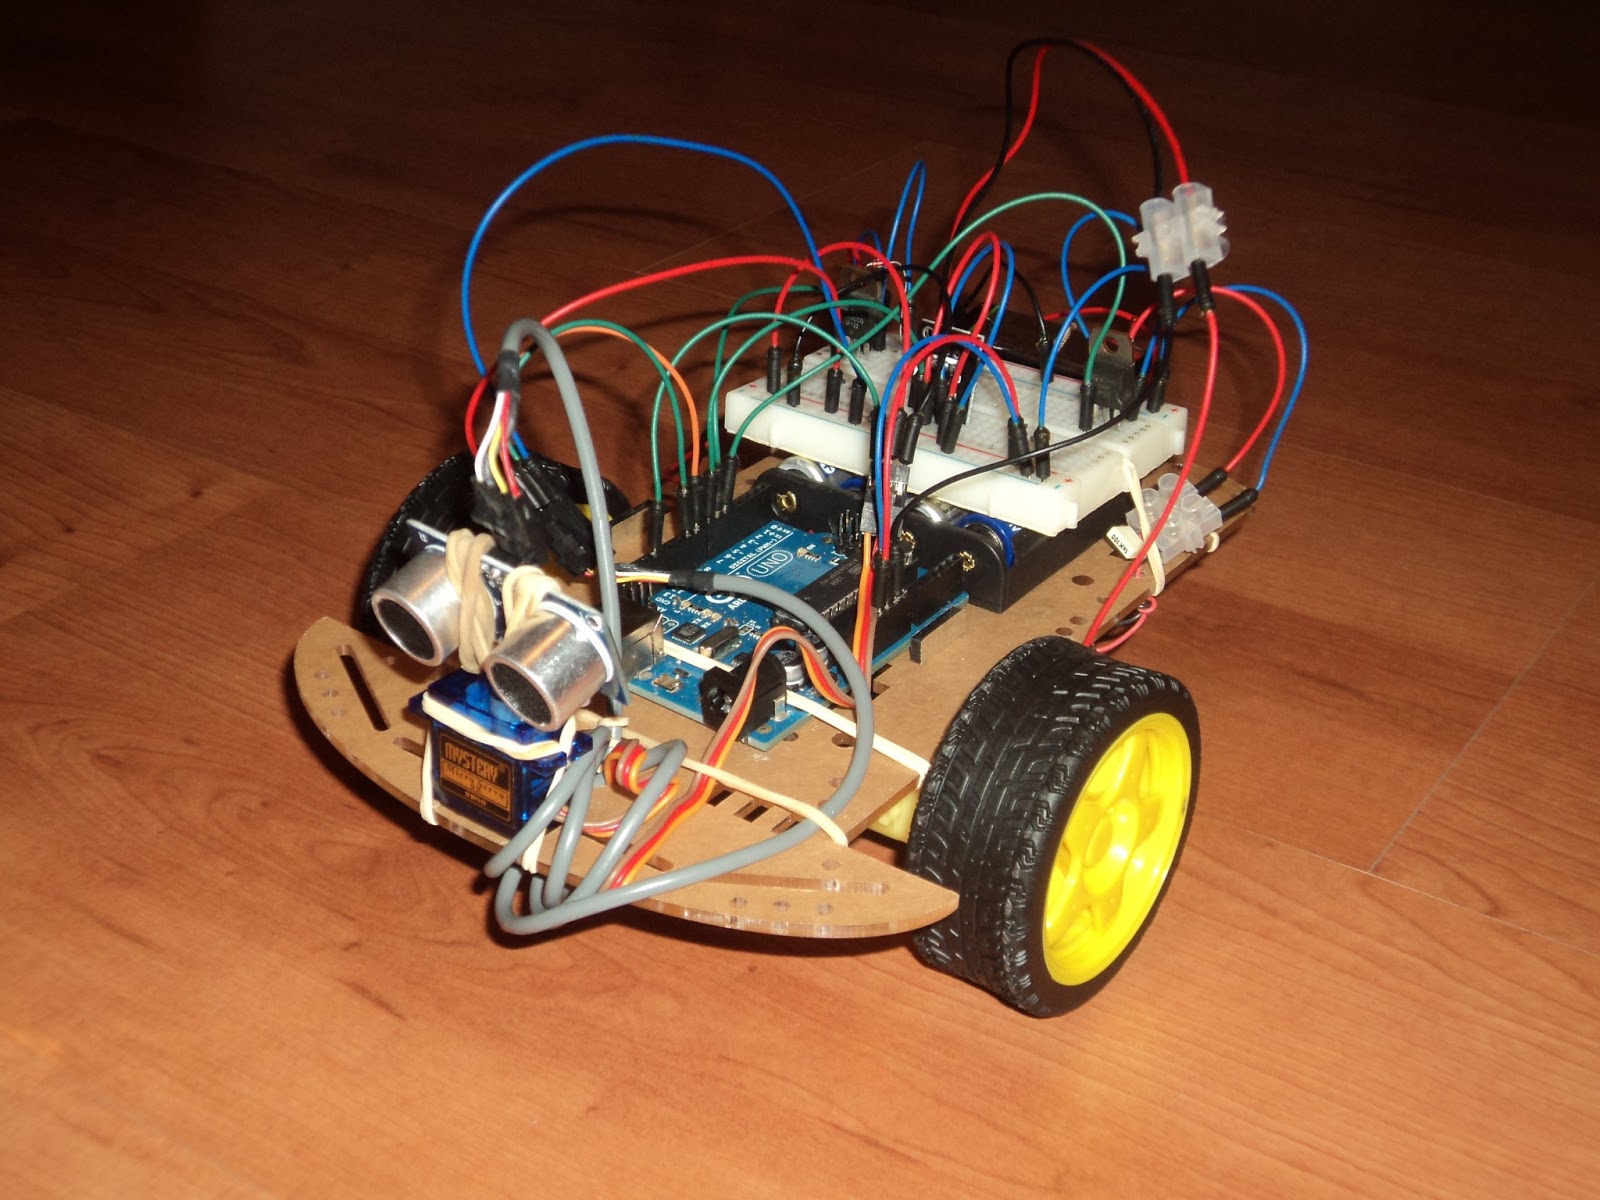 Geek formación: El coche con control remoto usando Arduino ya aquí